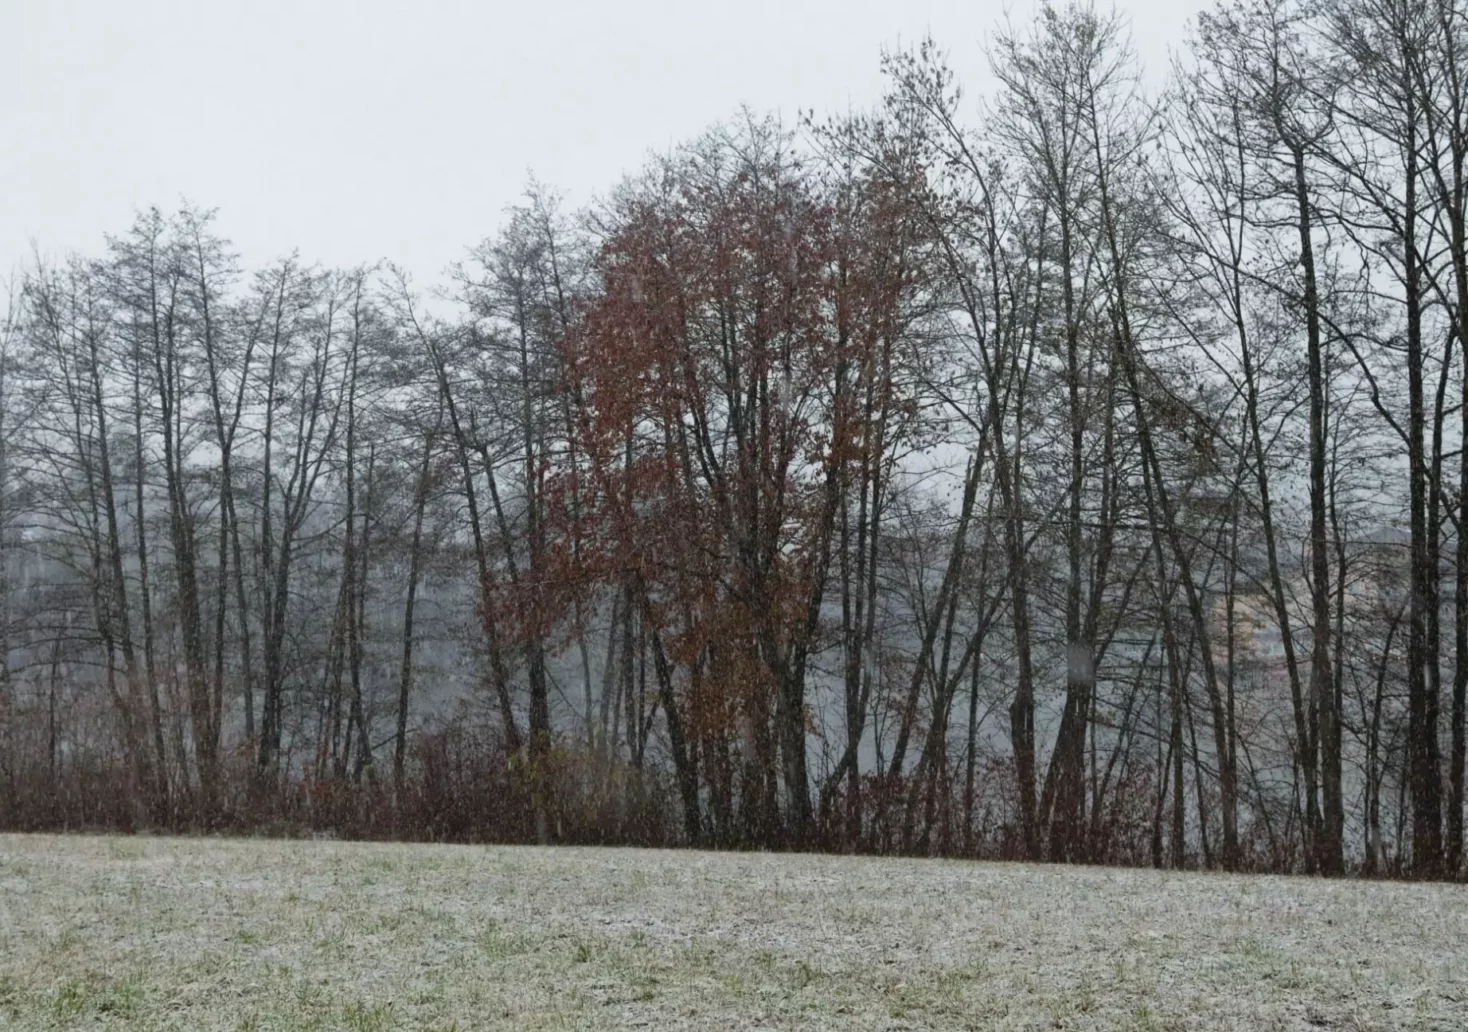 Ein Bild auf 5min.at zeigt den Blick auf den St. Leonharder See in Villach. Er liegt versteckt hinter einer Baumreihe, die Wiese ist leicht angezuckert von Schnee.